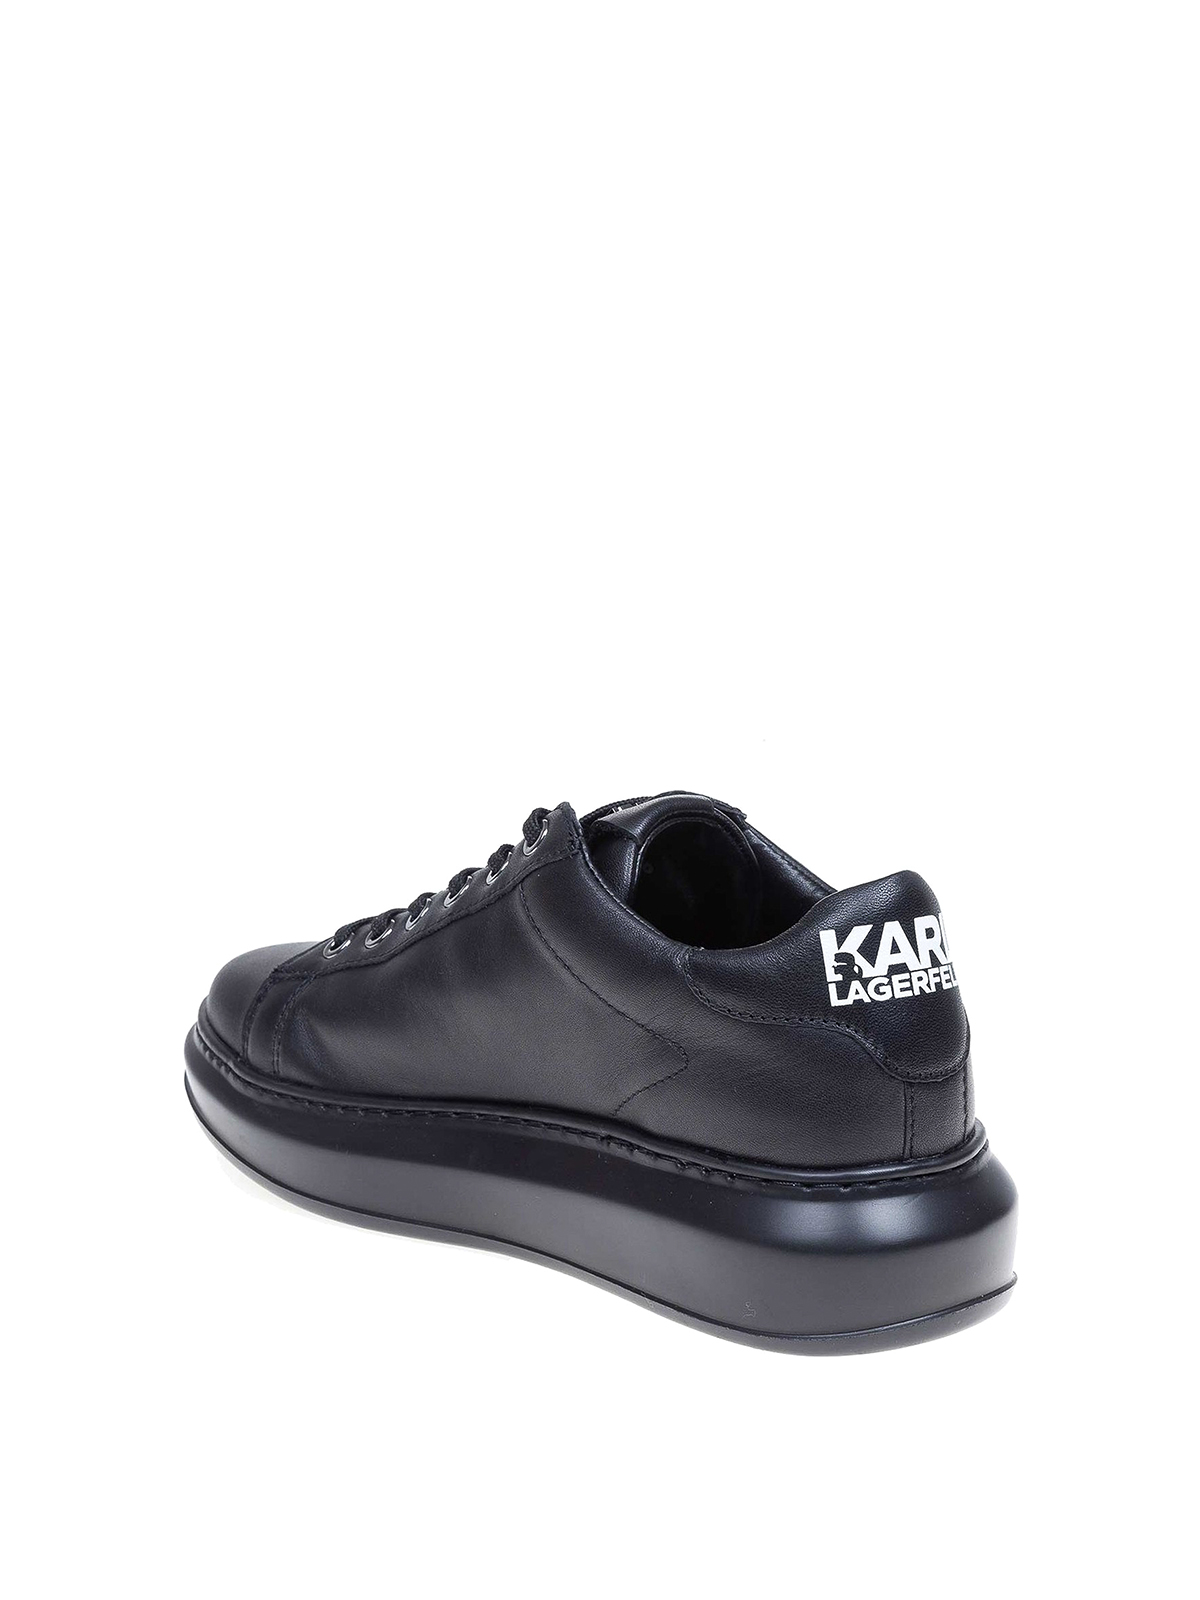 karl lagerfeld sneakers black